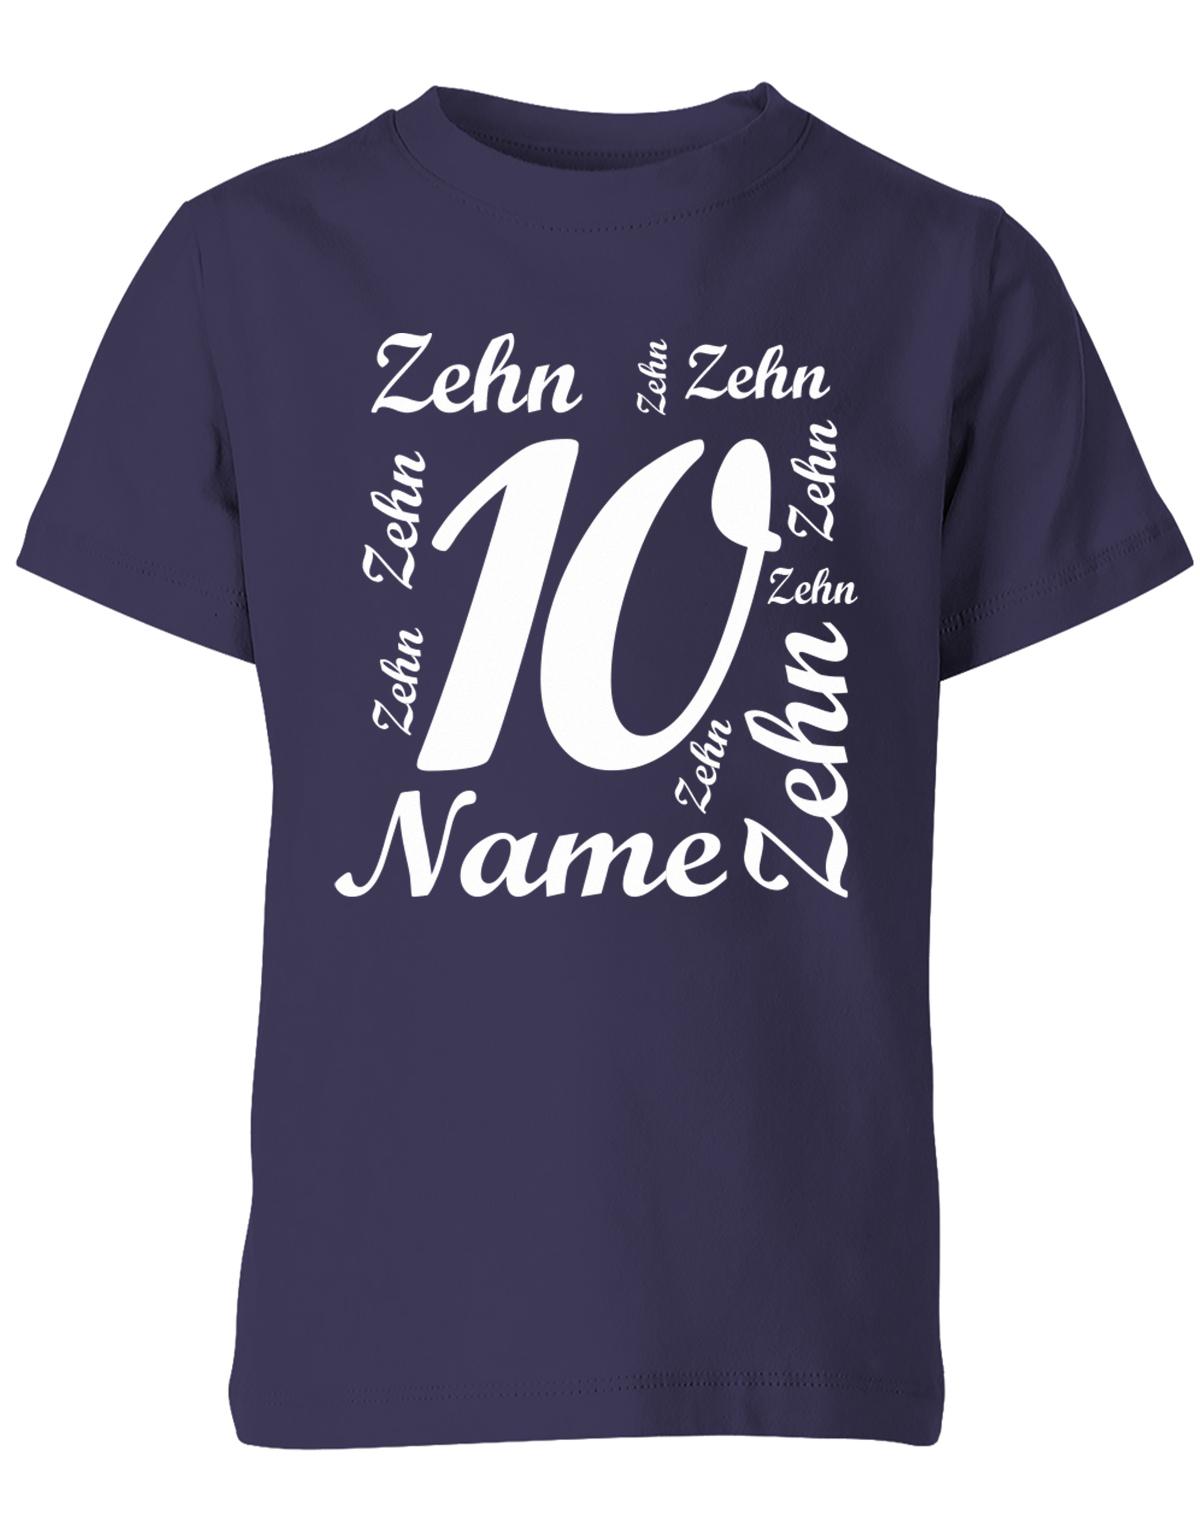 ich-bin-10-viele-zehnen-mit-name-geburtstag-kinder-shirt-navy